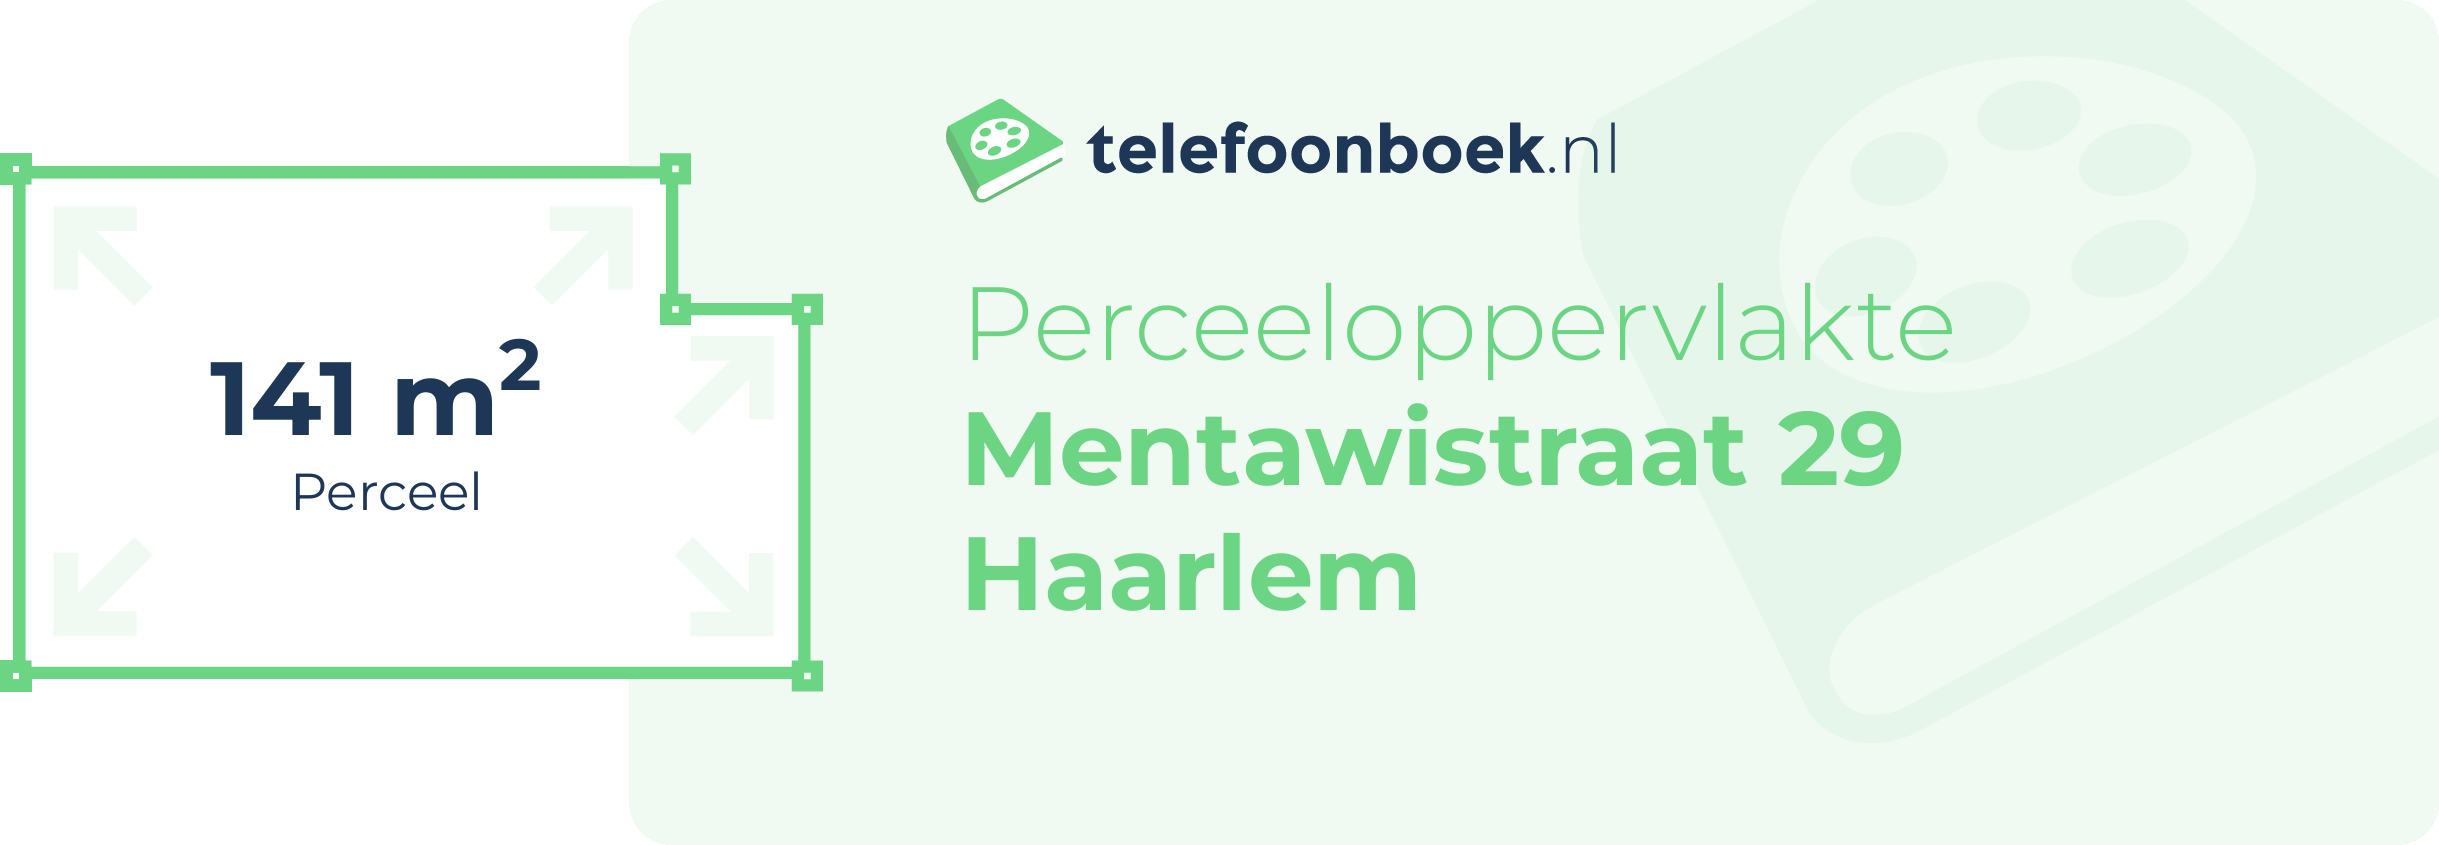 Perceeloppervlakte Mentawistraat 29 Haarlem